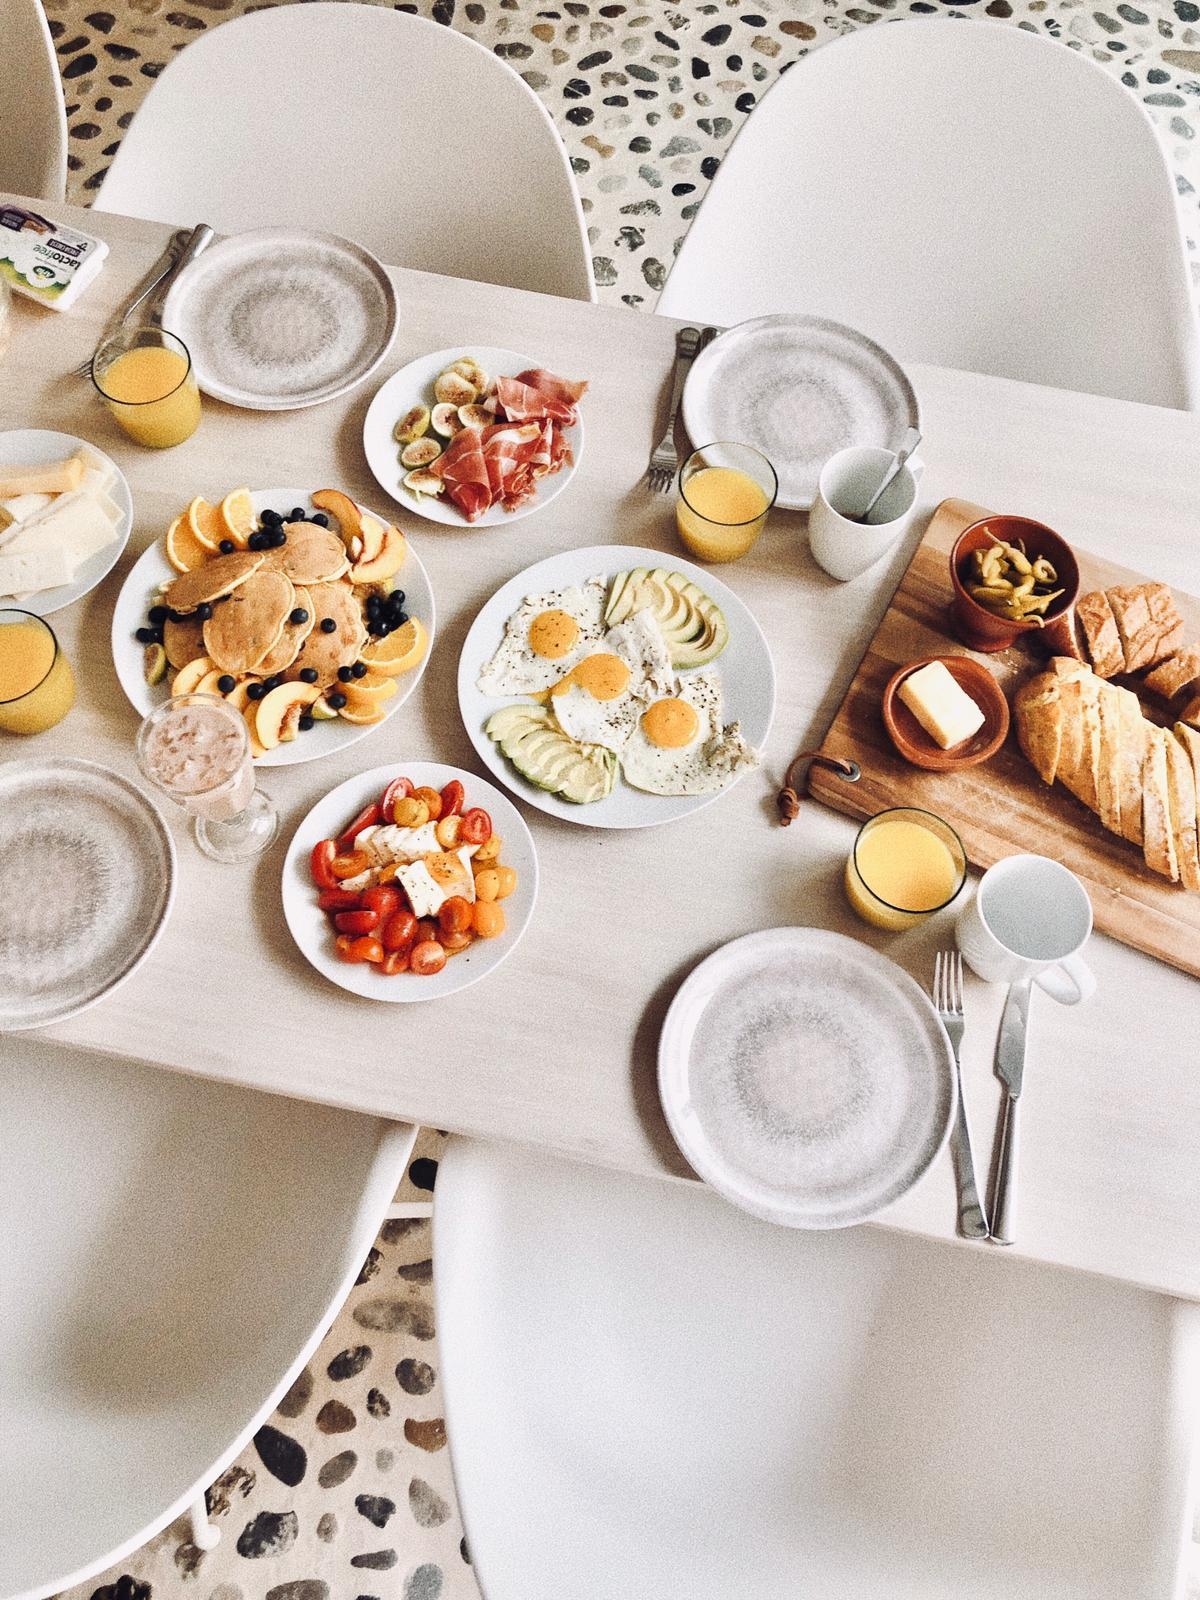 Frühstück ist fertig.
#lovebreakfast#goodmorning